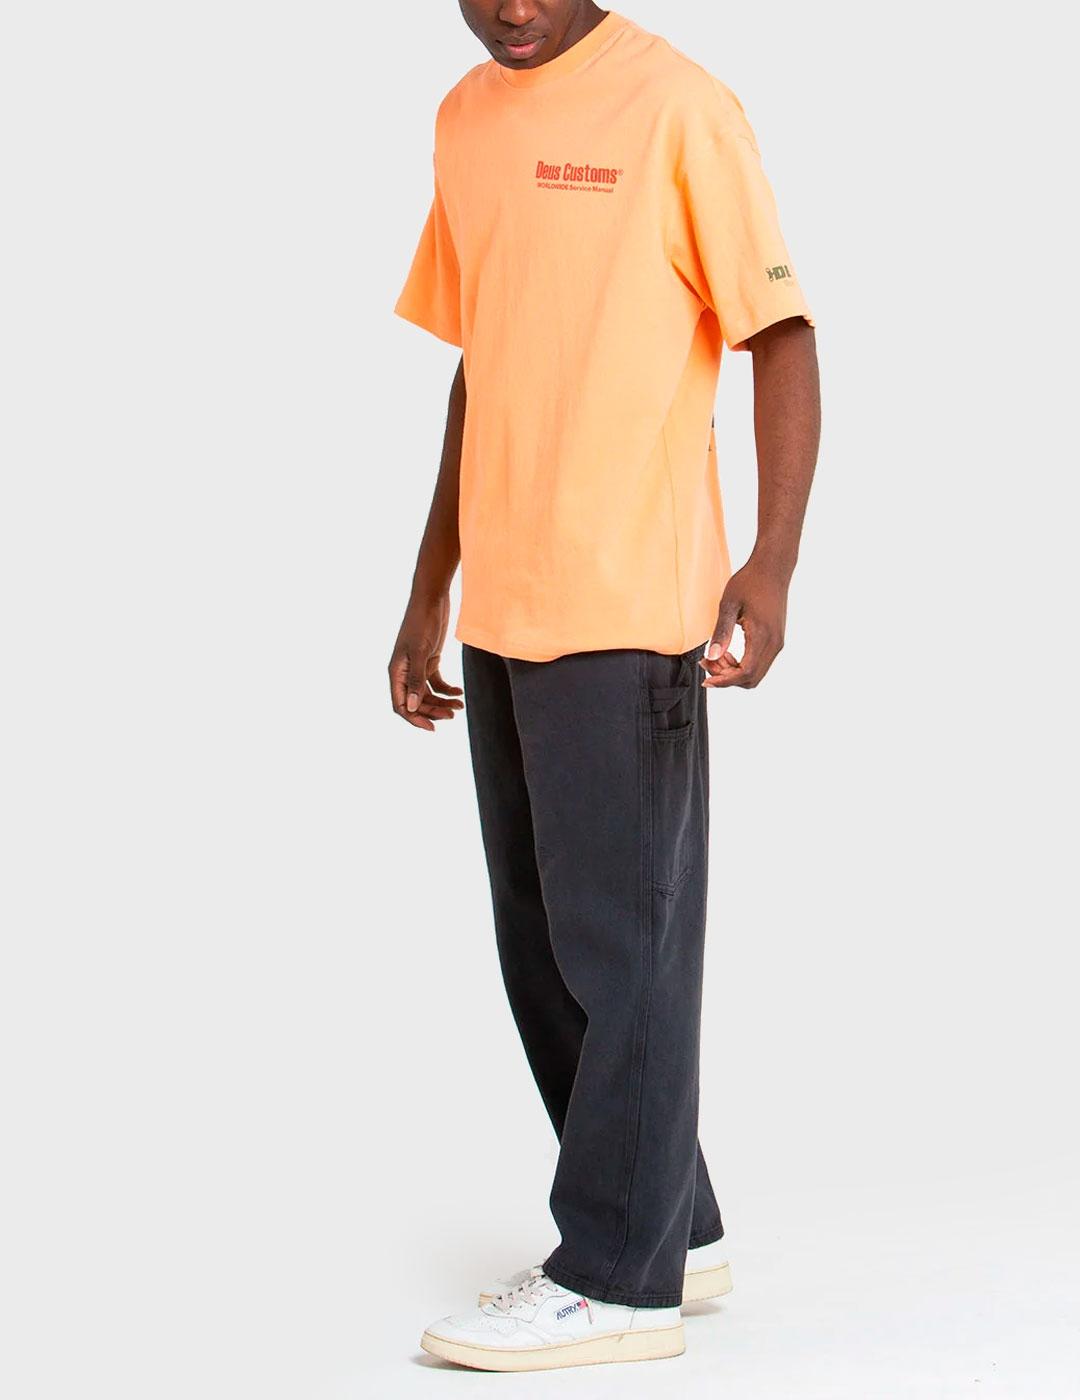 Camiseta Deus Service Manual naranja para hombre